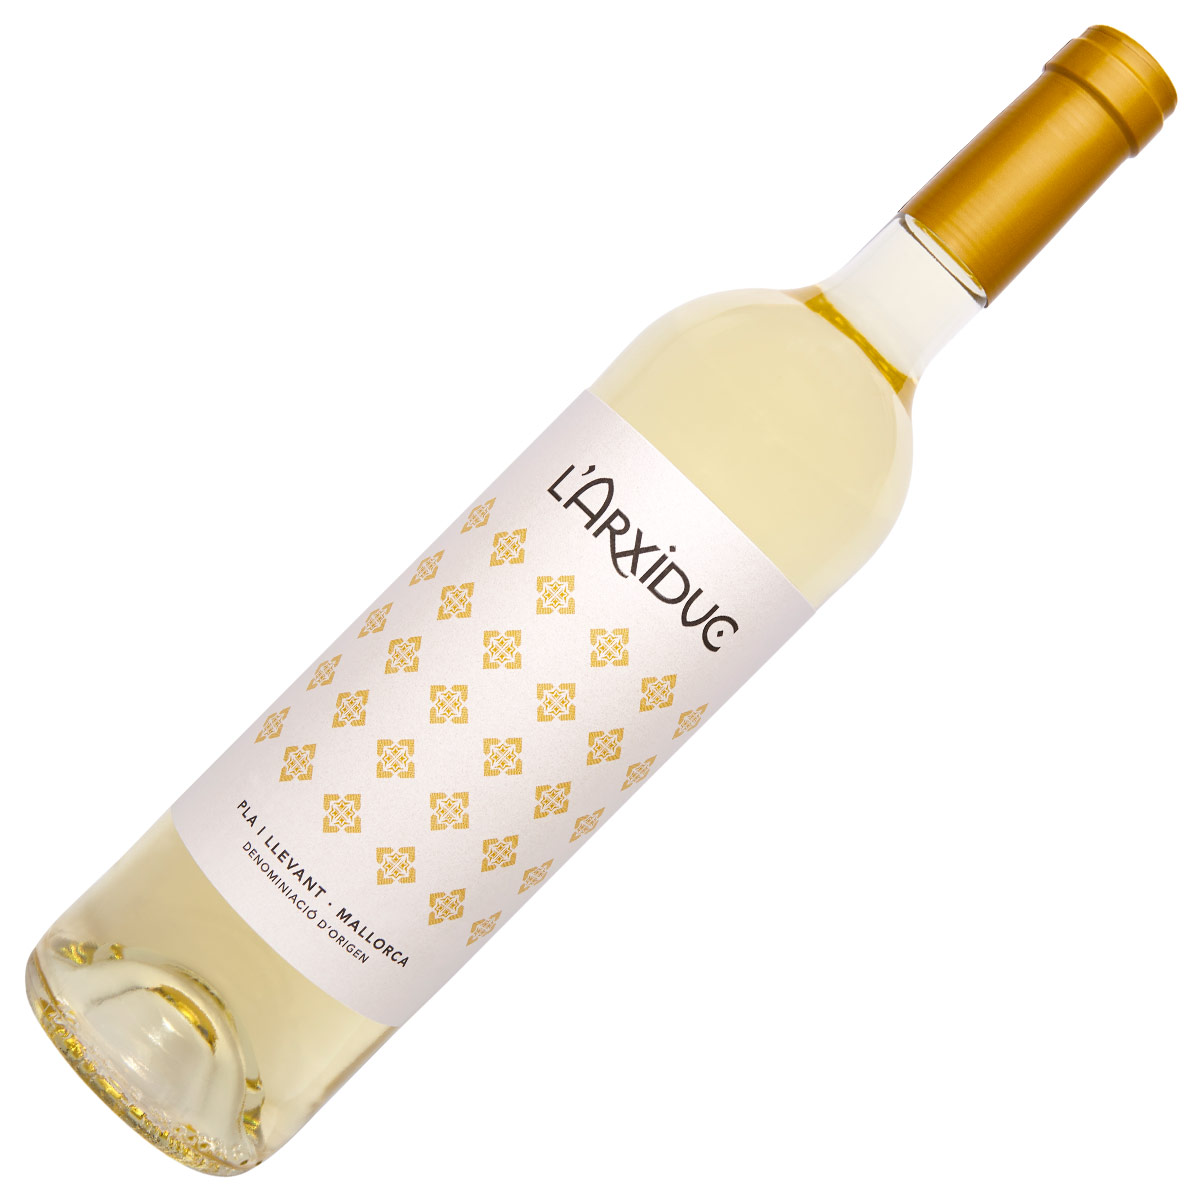 Pere Seda L'Arxiduc white wine D.O. Pla i Llevant